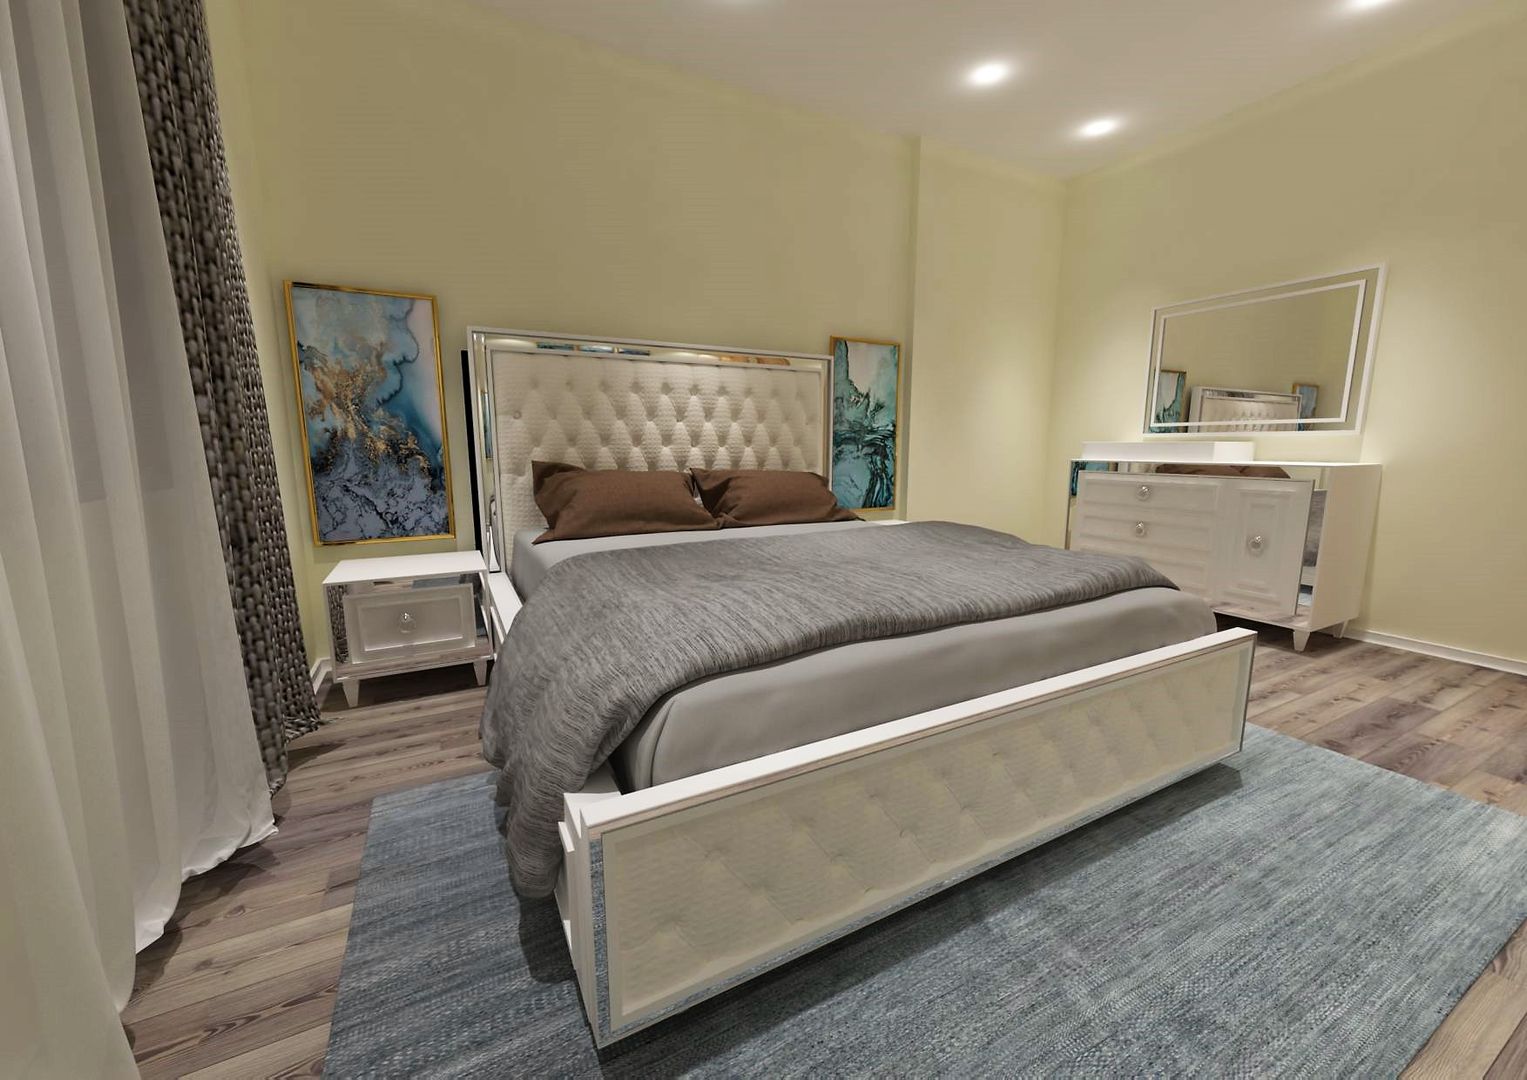 Şık tasarımlarla evinizi şekillendiriyoruz., Bueno Mobilya Bueno Mobilya Modern style bedroom Solid Wood Multicolored Beds & headboards